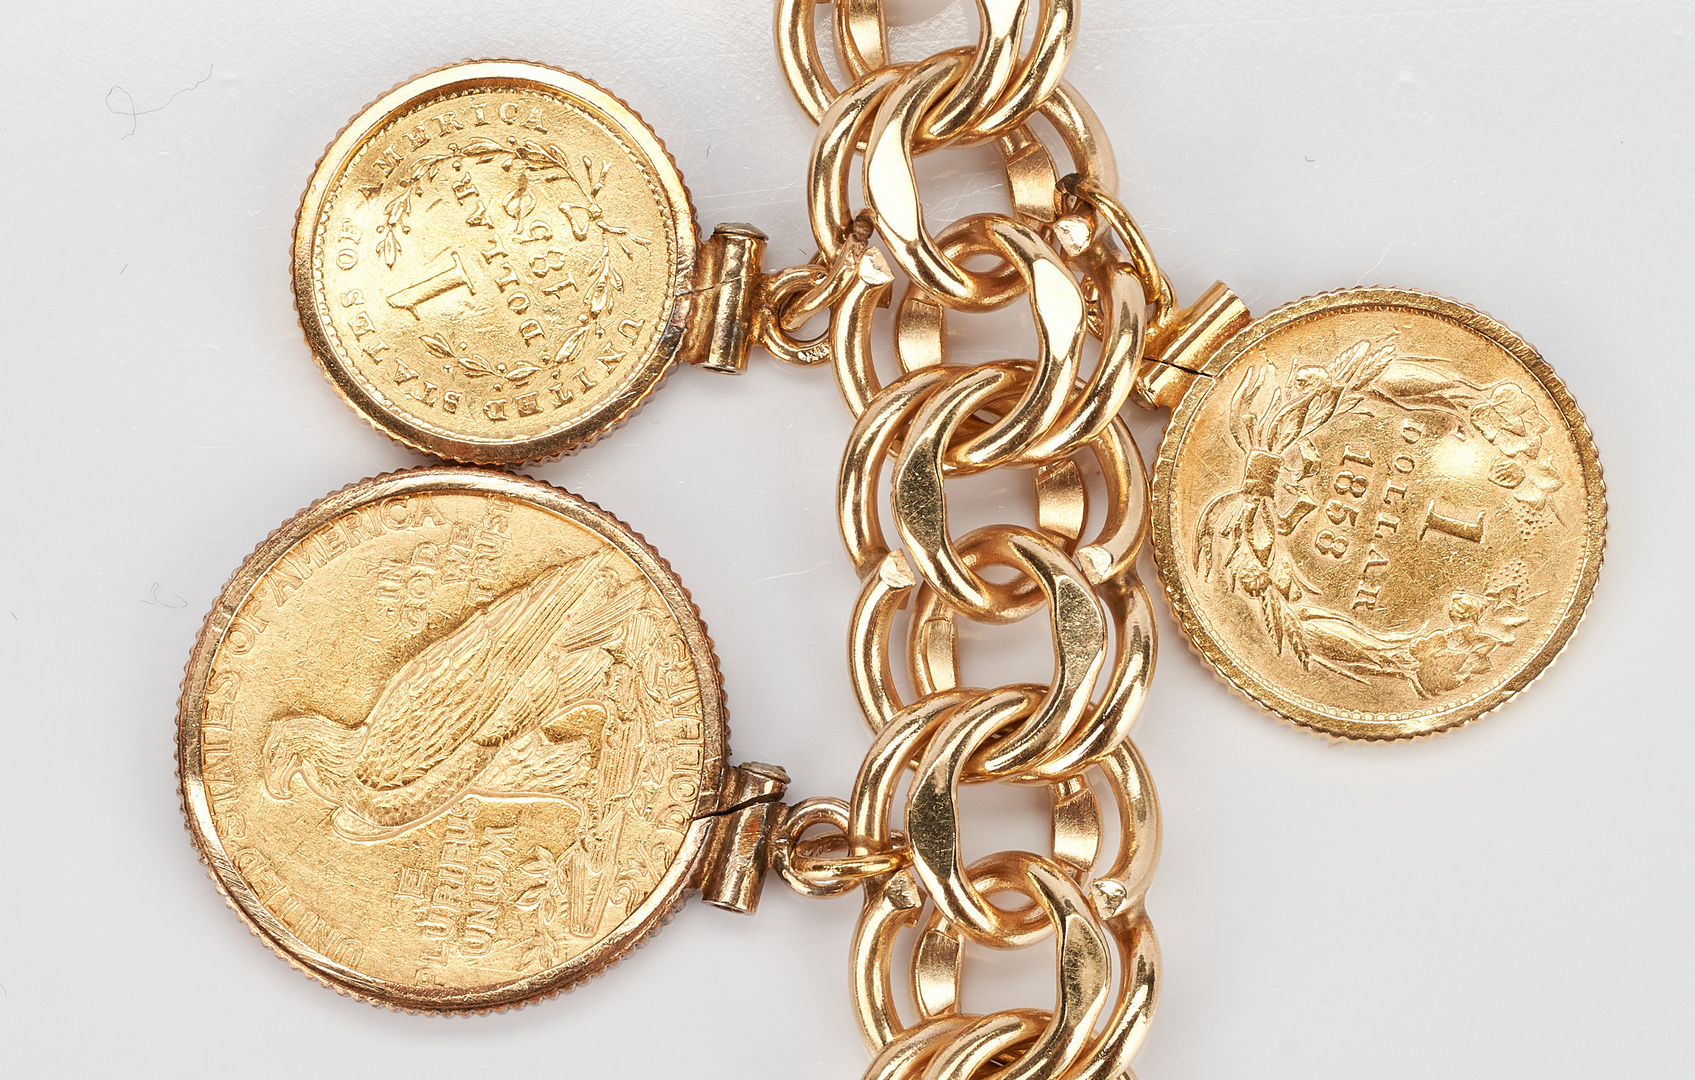 Lot 35: 14K Gold Charm Bracelet, 86.2 grams